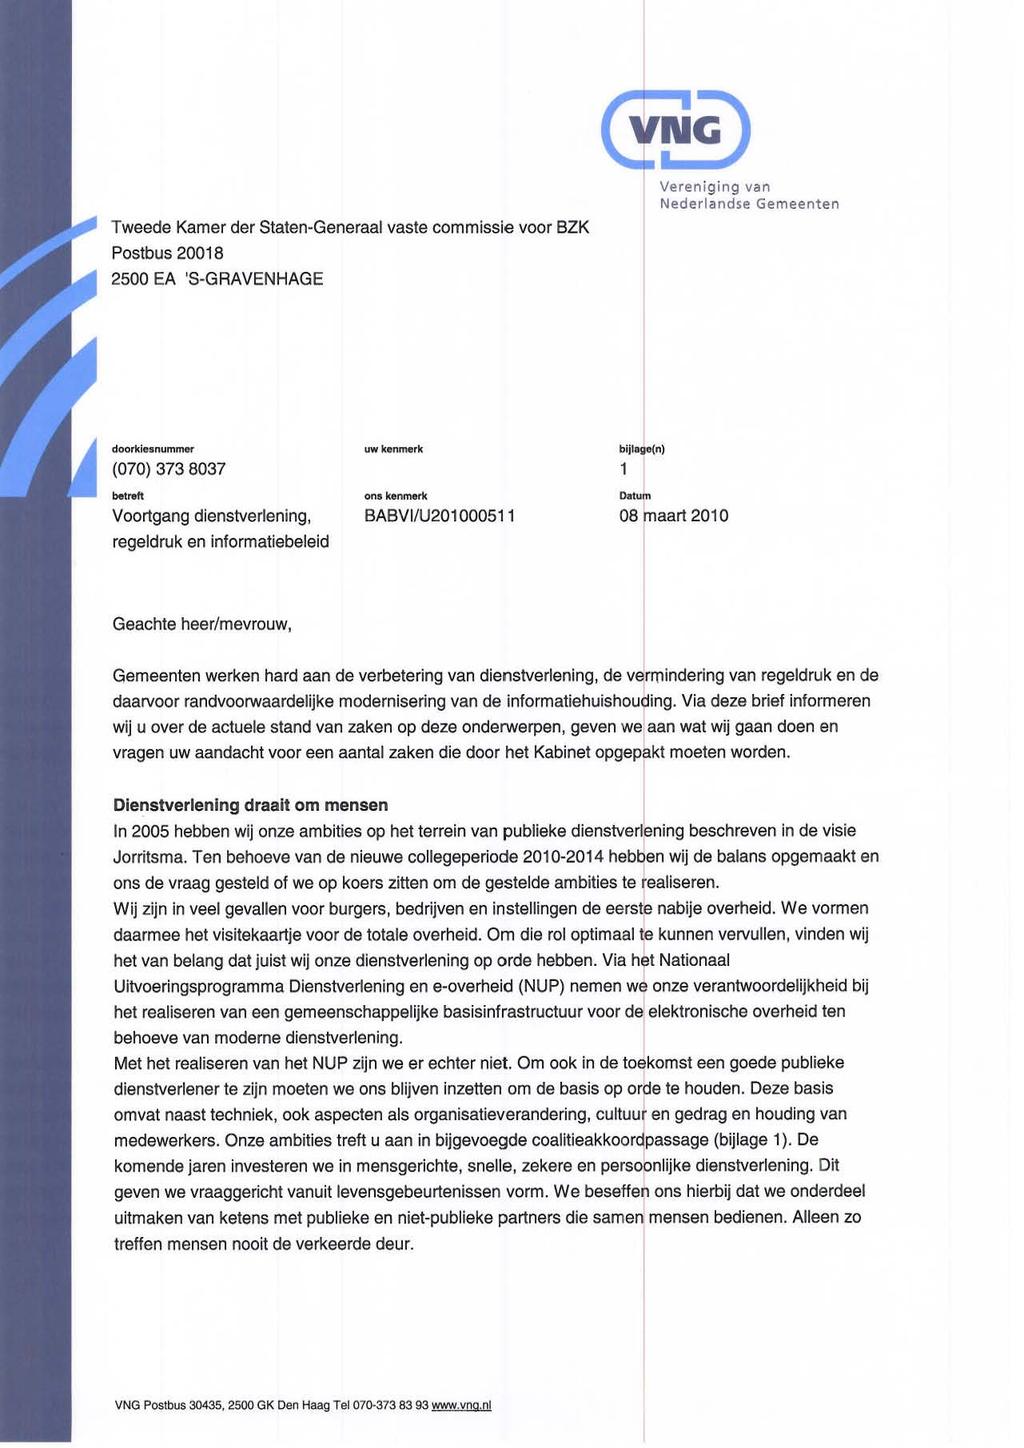 Tweede Kamer der Staten-Generaal vaste commissie voor BZK Postbus 20018 2500 EA 'S-GRAVENHAGE Vereniging Nederlandse Gemeenten (070) 373 8037 "'.